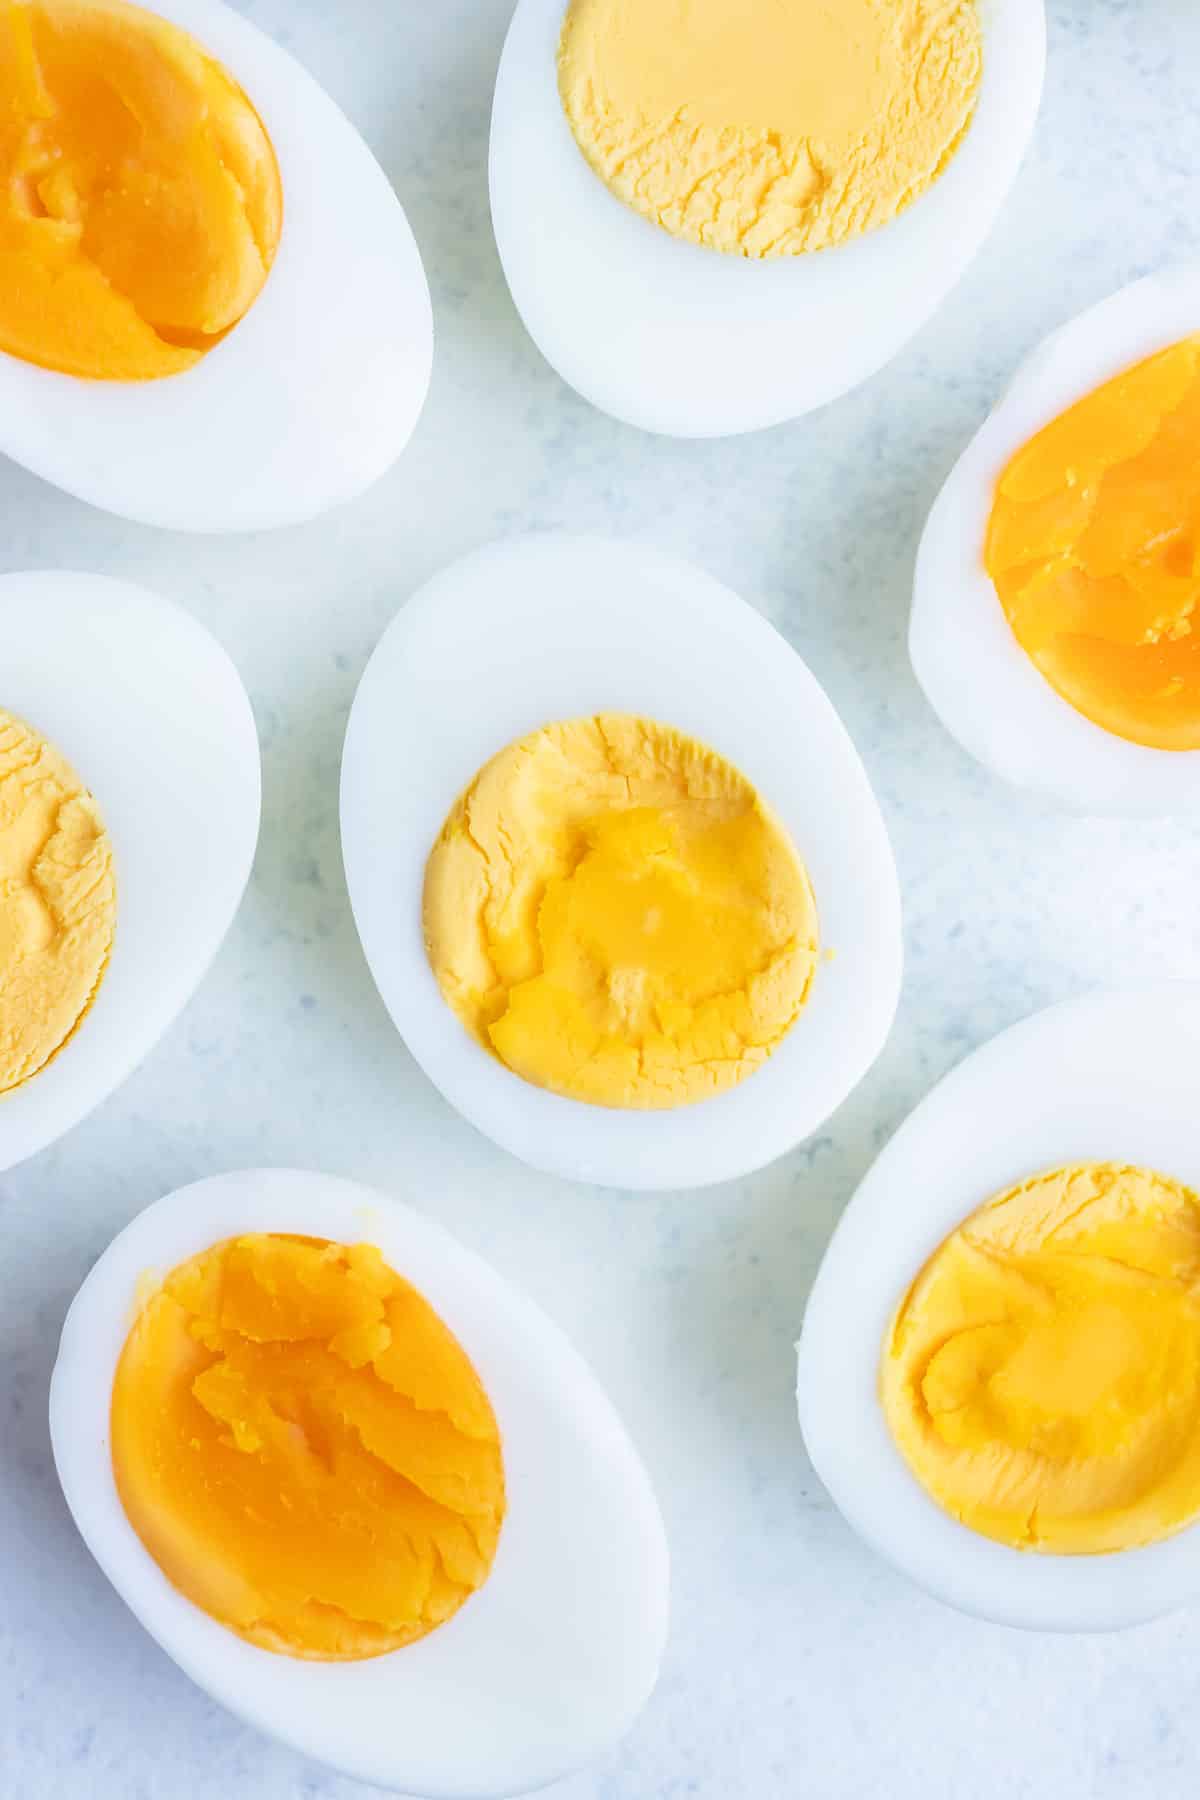 https://www.evolvingtable.com/wp-content/uploads/2023/03/How-to-Boil-Eggs-26.jpg